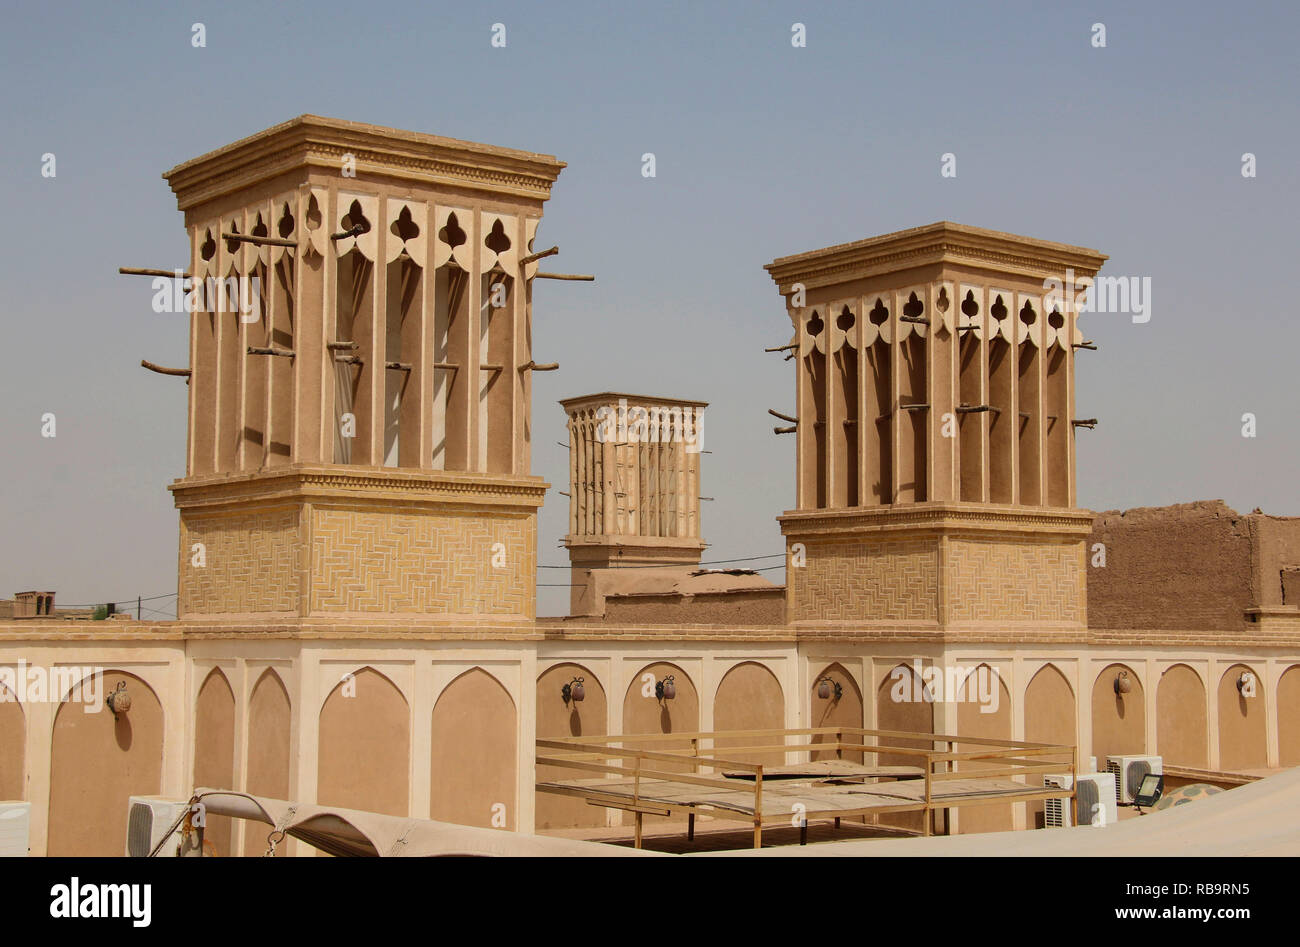 Torri del vento è un tradizionale Persiano elemento architettonico per creare una ventilazione naturale negli edifici, la vecchia città di Yazd, Iran. Foto Stock